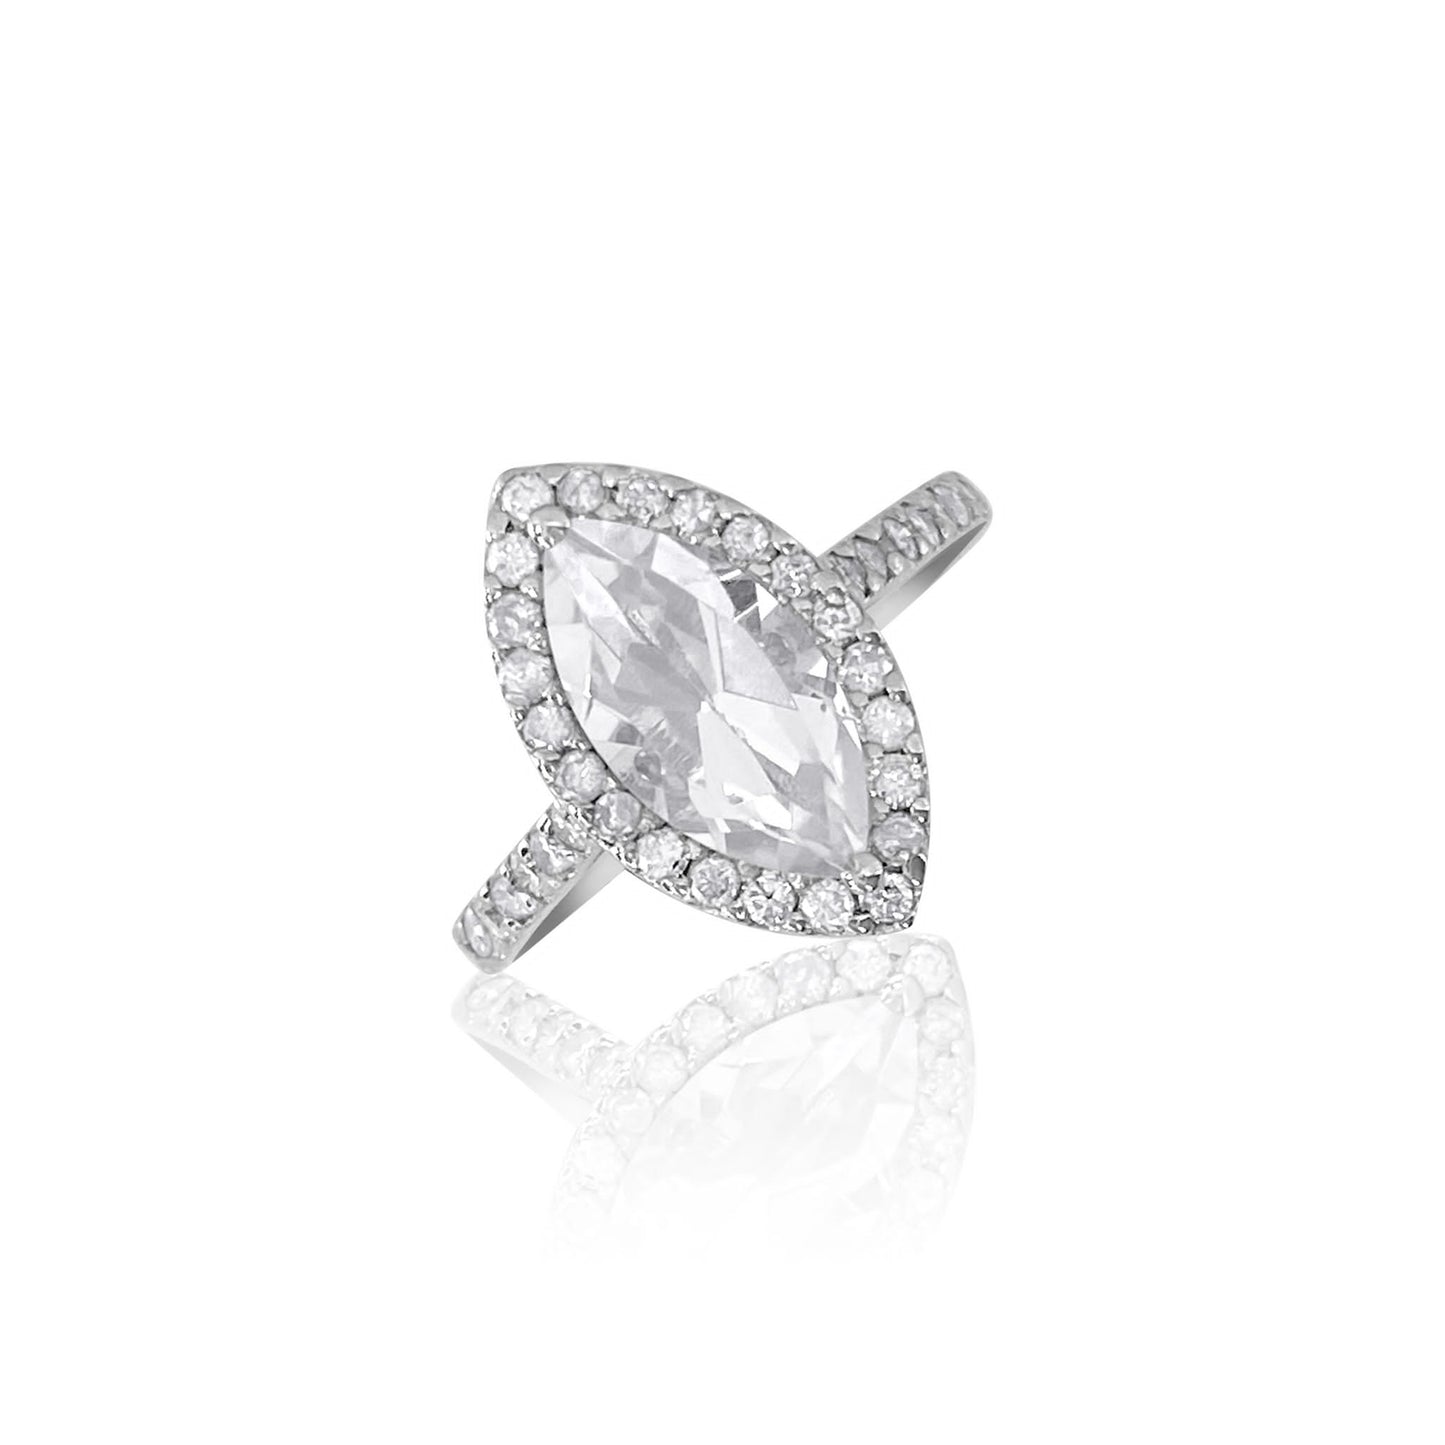 Marquise White Topaz & Diamond Ring